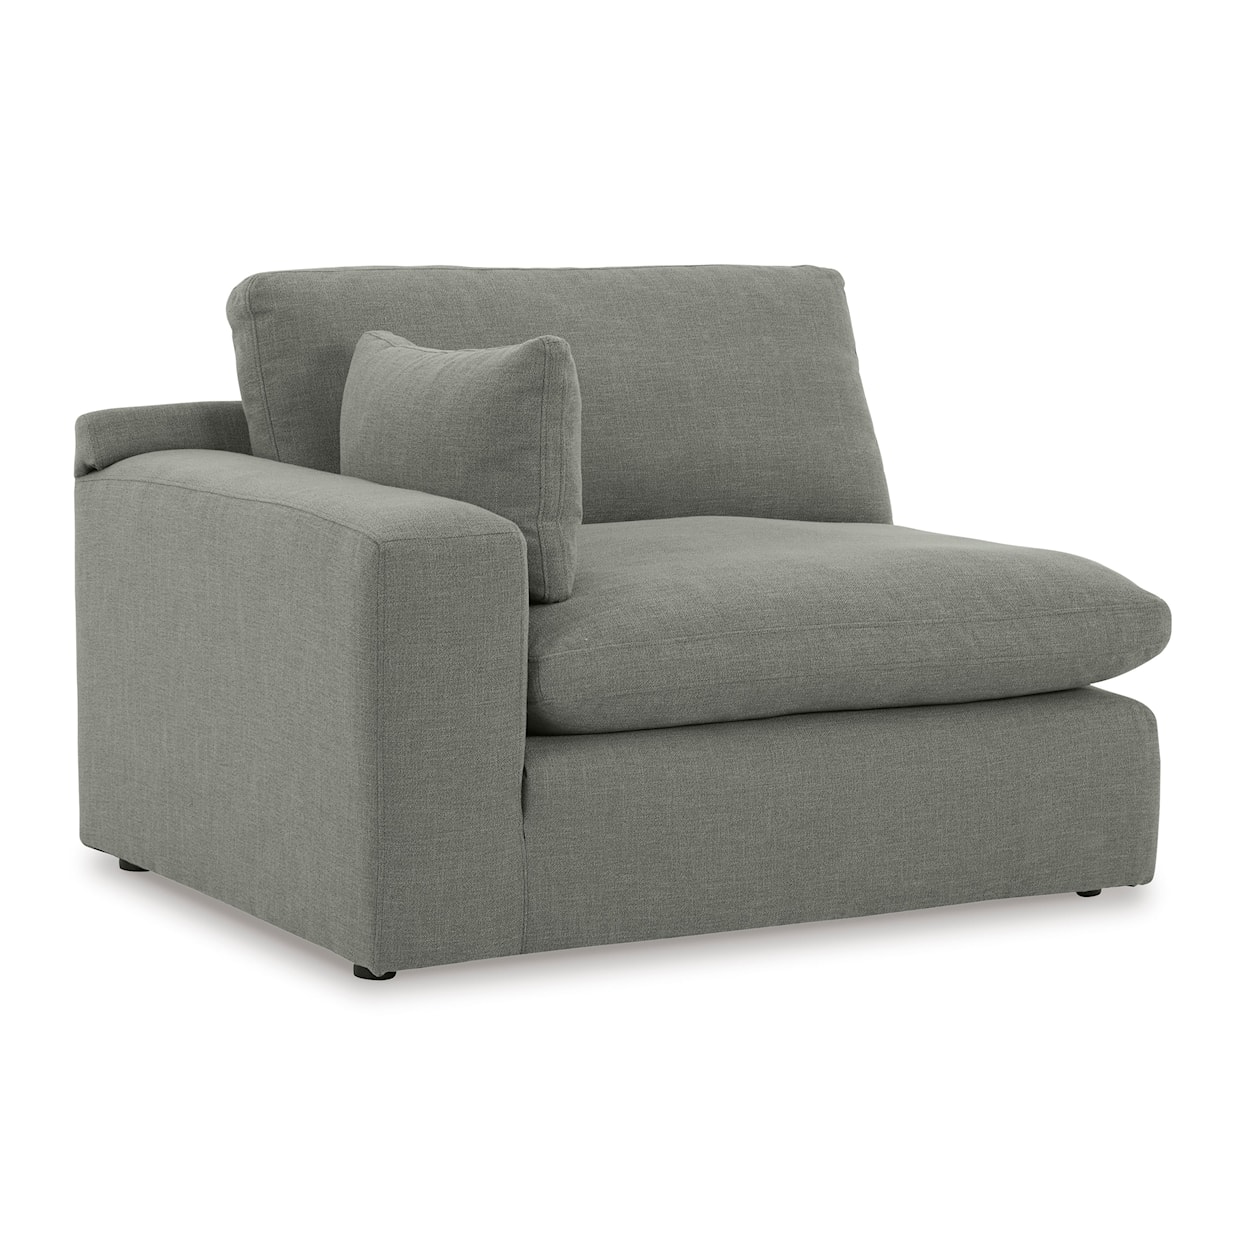 Ashley Furniture Benchcraft Elyza Left-Arm Facing Corner Chair